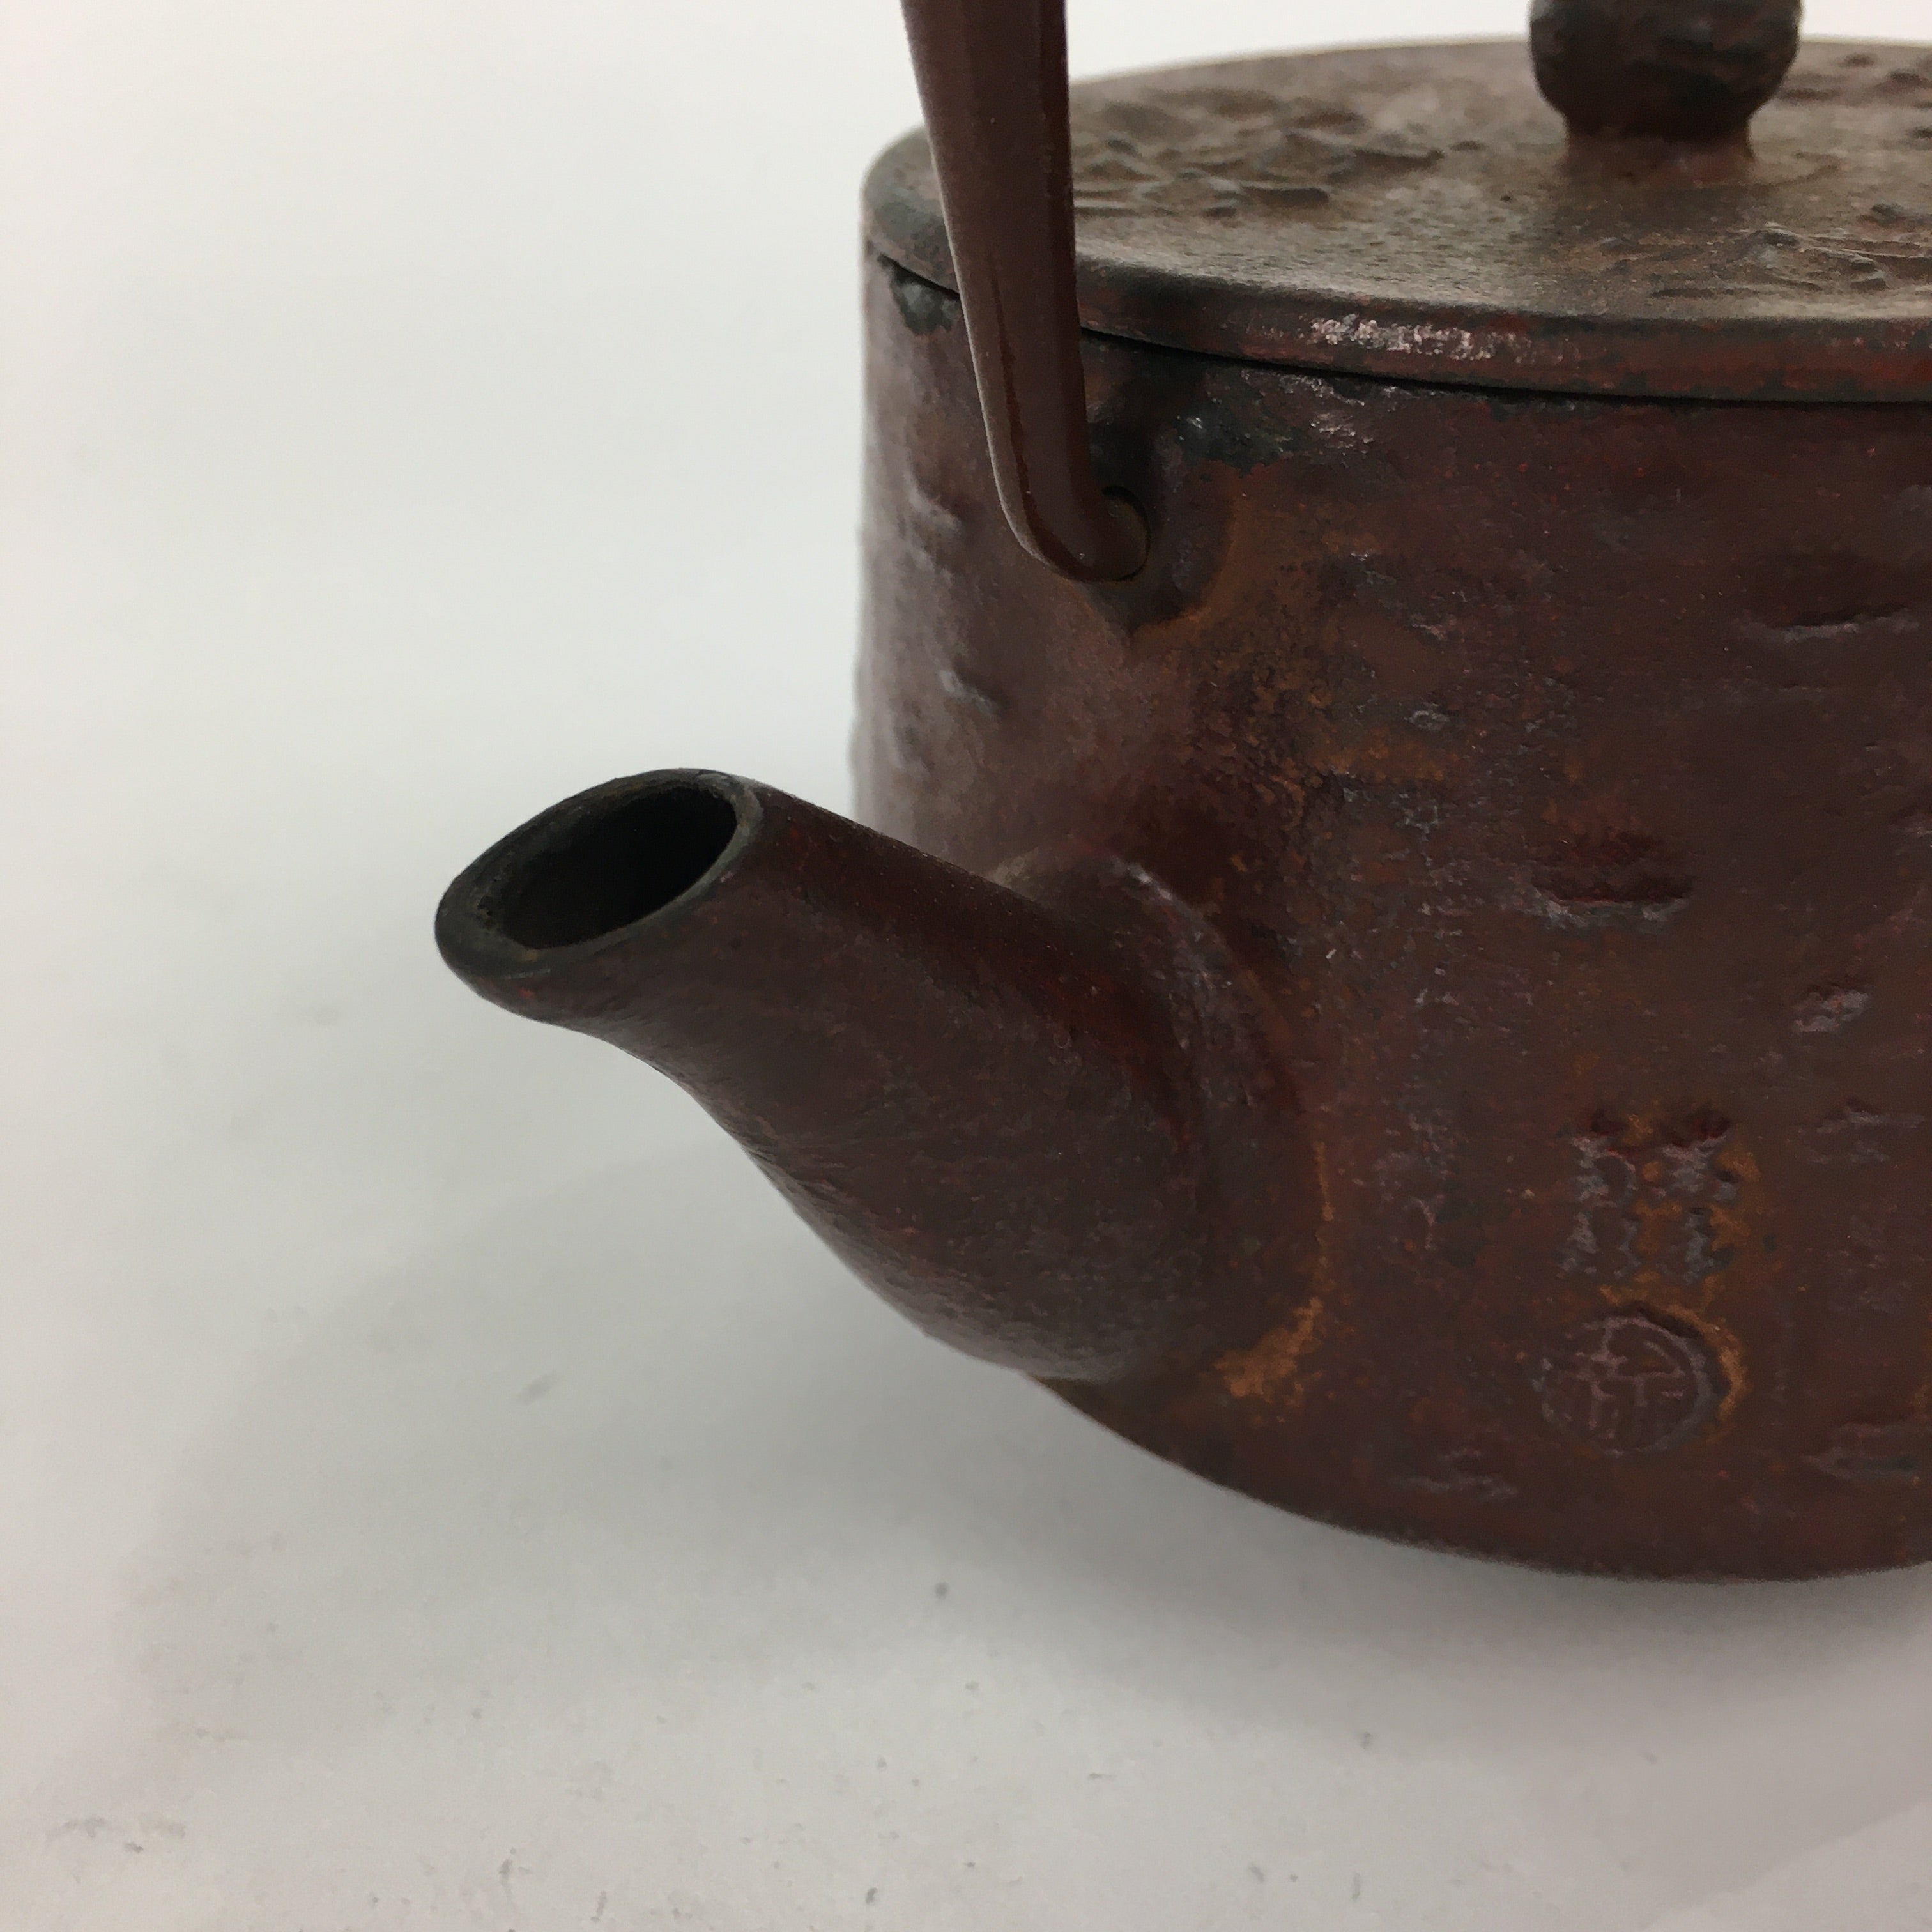 Cast Iron Coffee Pot